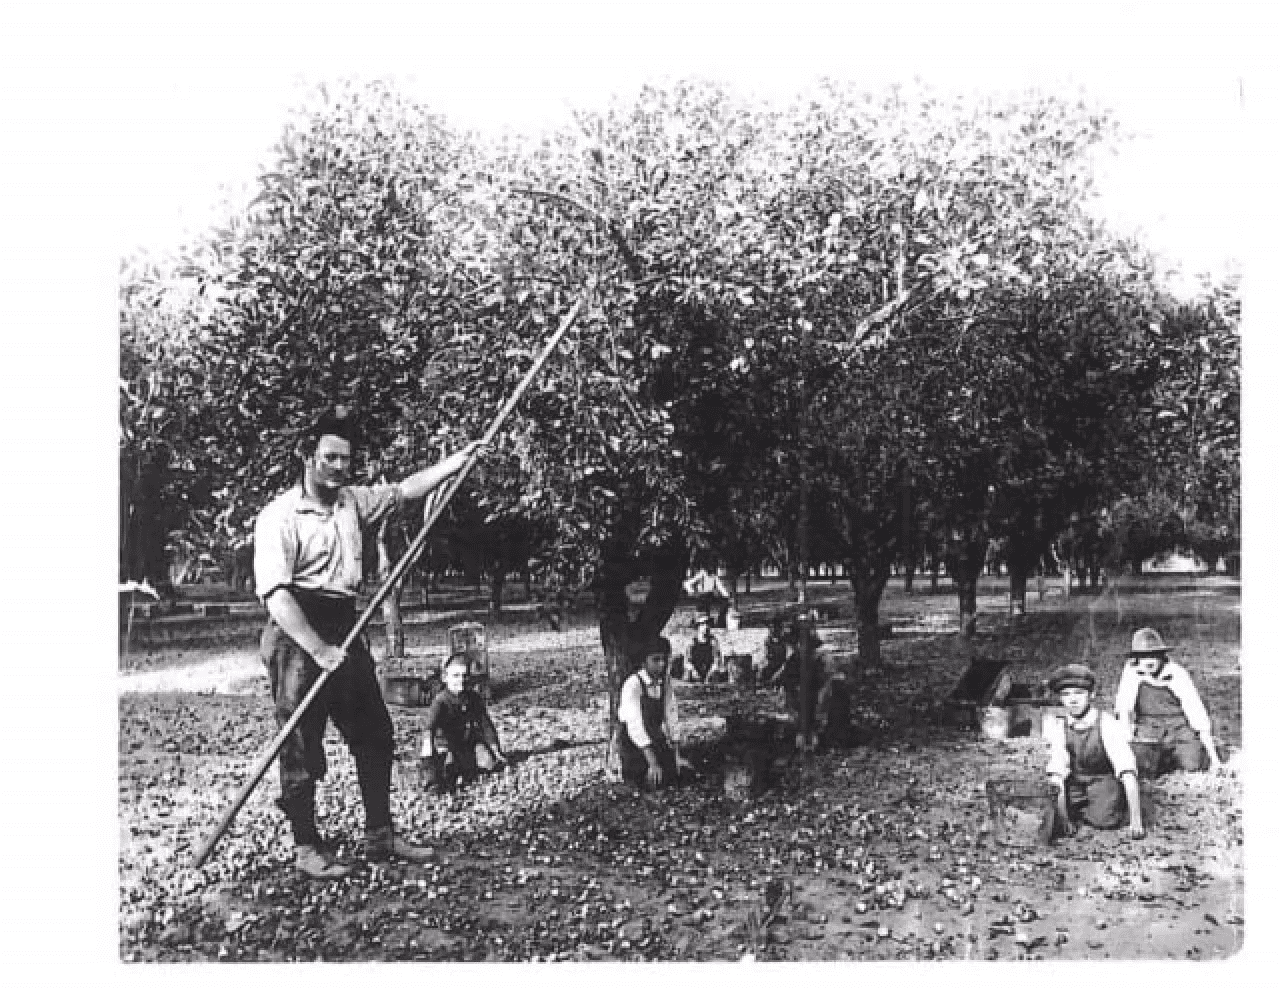 men working in a prune field in the 1950's